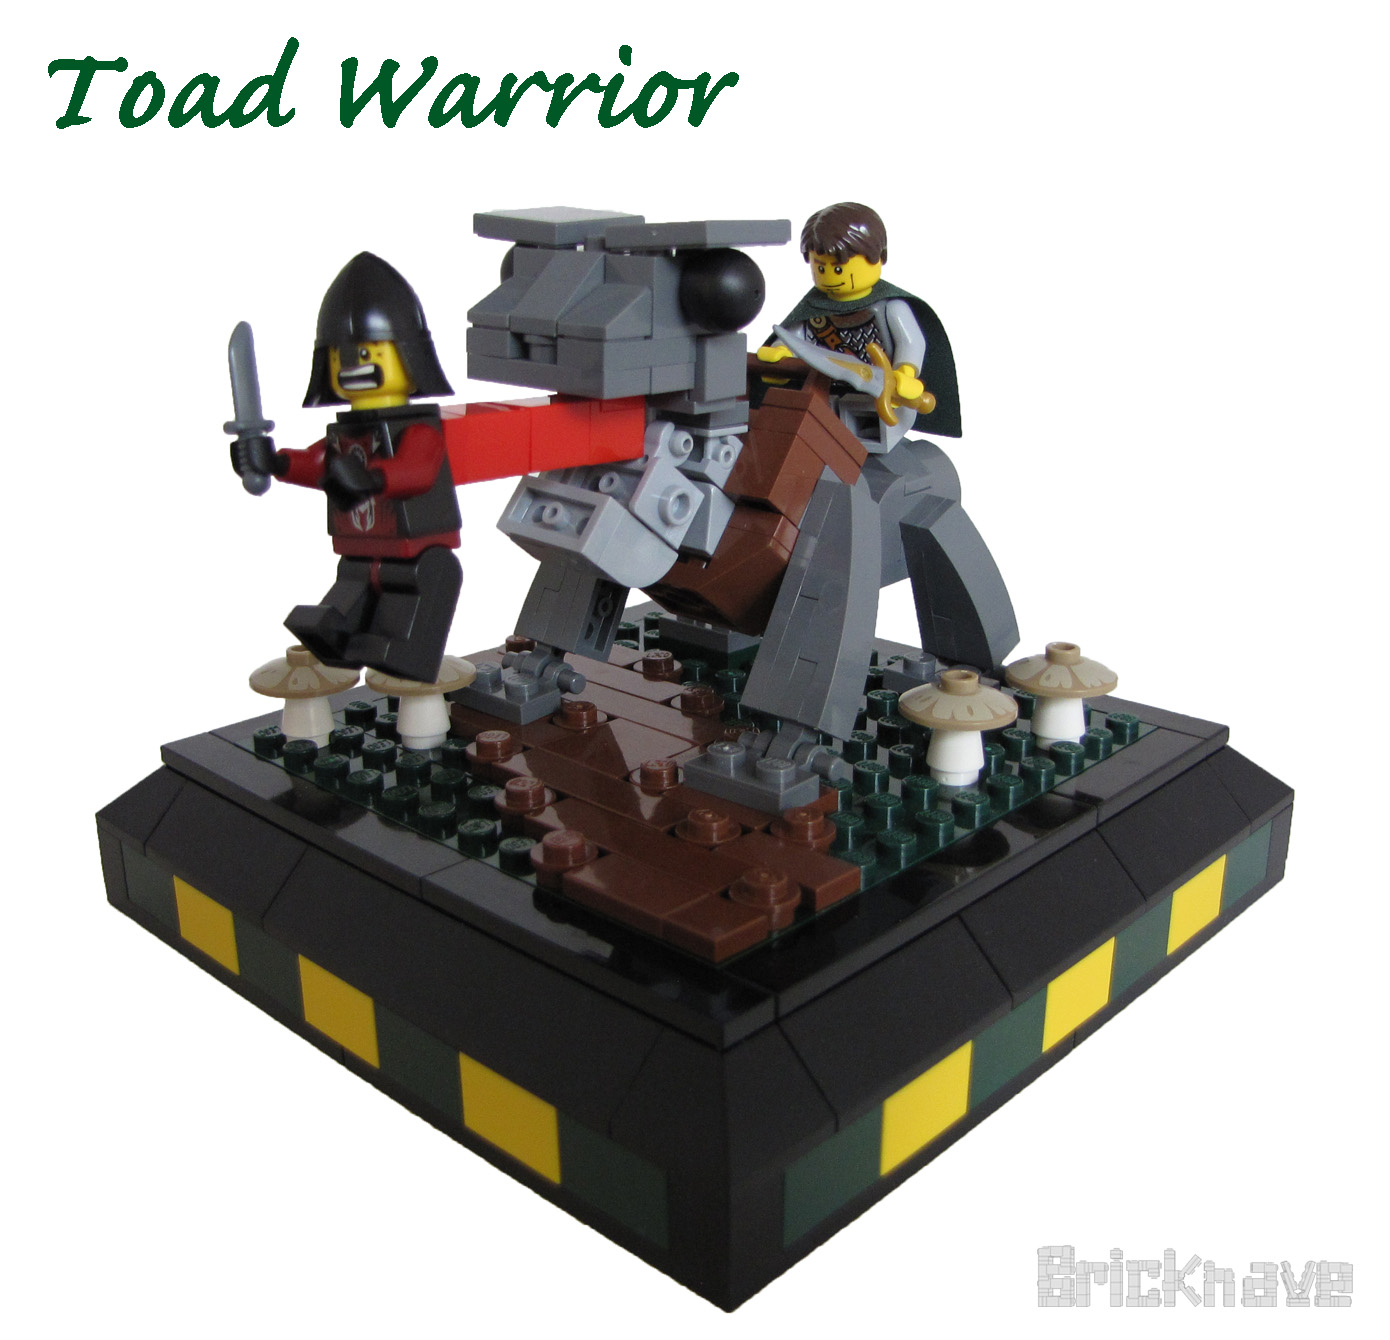 Toad Warrior